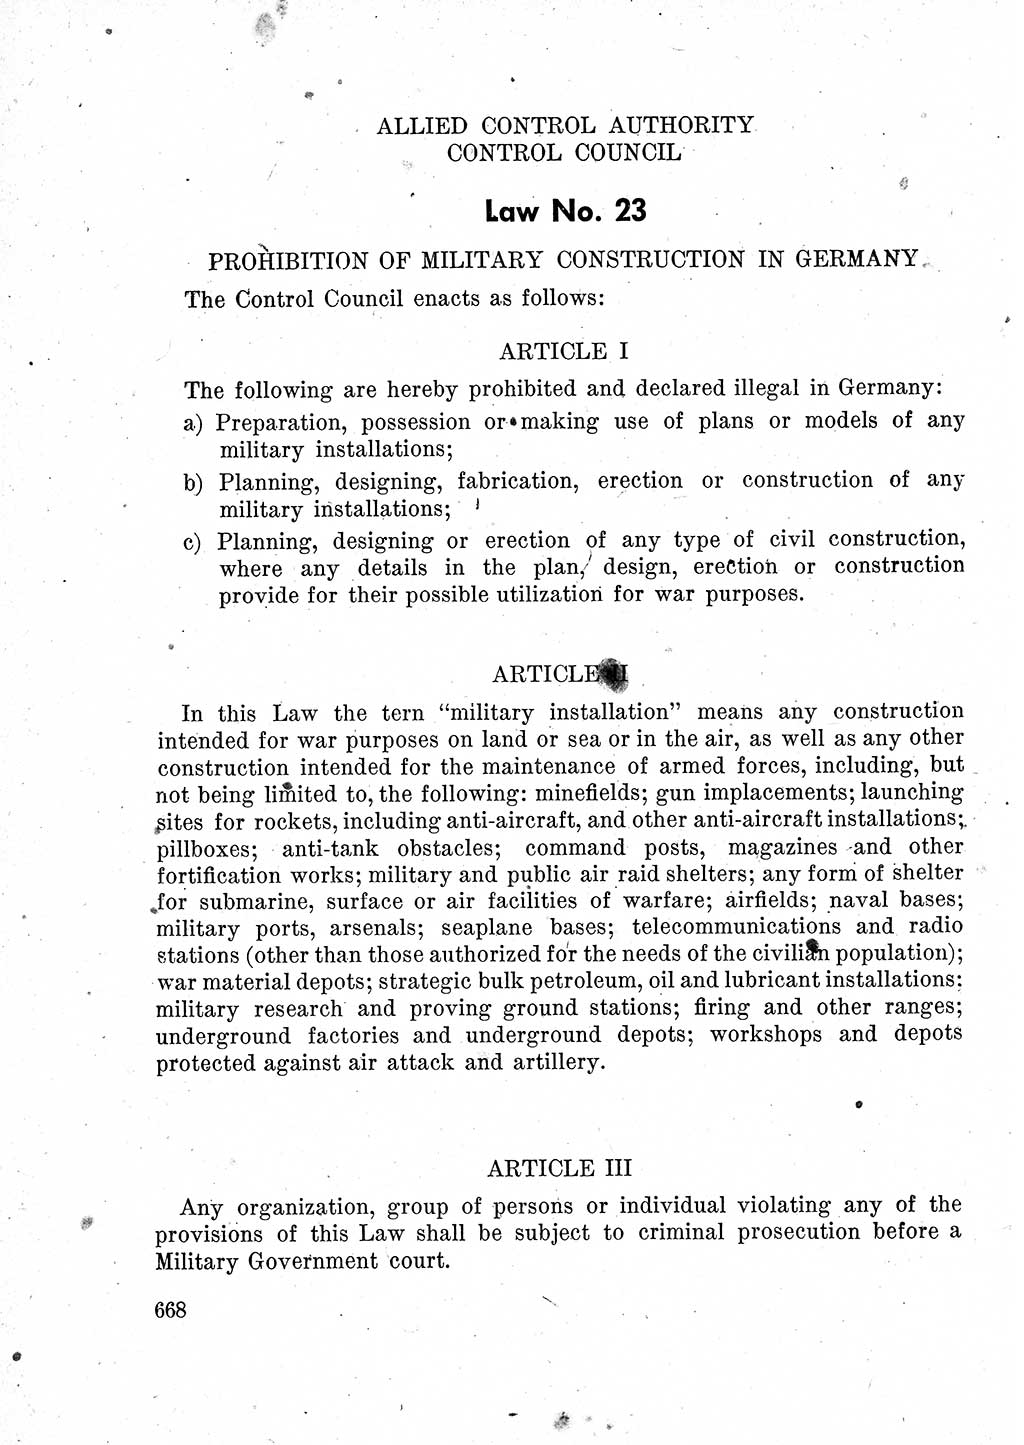 Das Recht der Besatzungsmacht (Deutschland), Proklamationen, Deklerationen, Verordnungen, Gesetze und Bekanntmachungen 1947, Seite 668 (R. Bes. Dtl. 1947, S. 668)